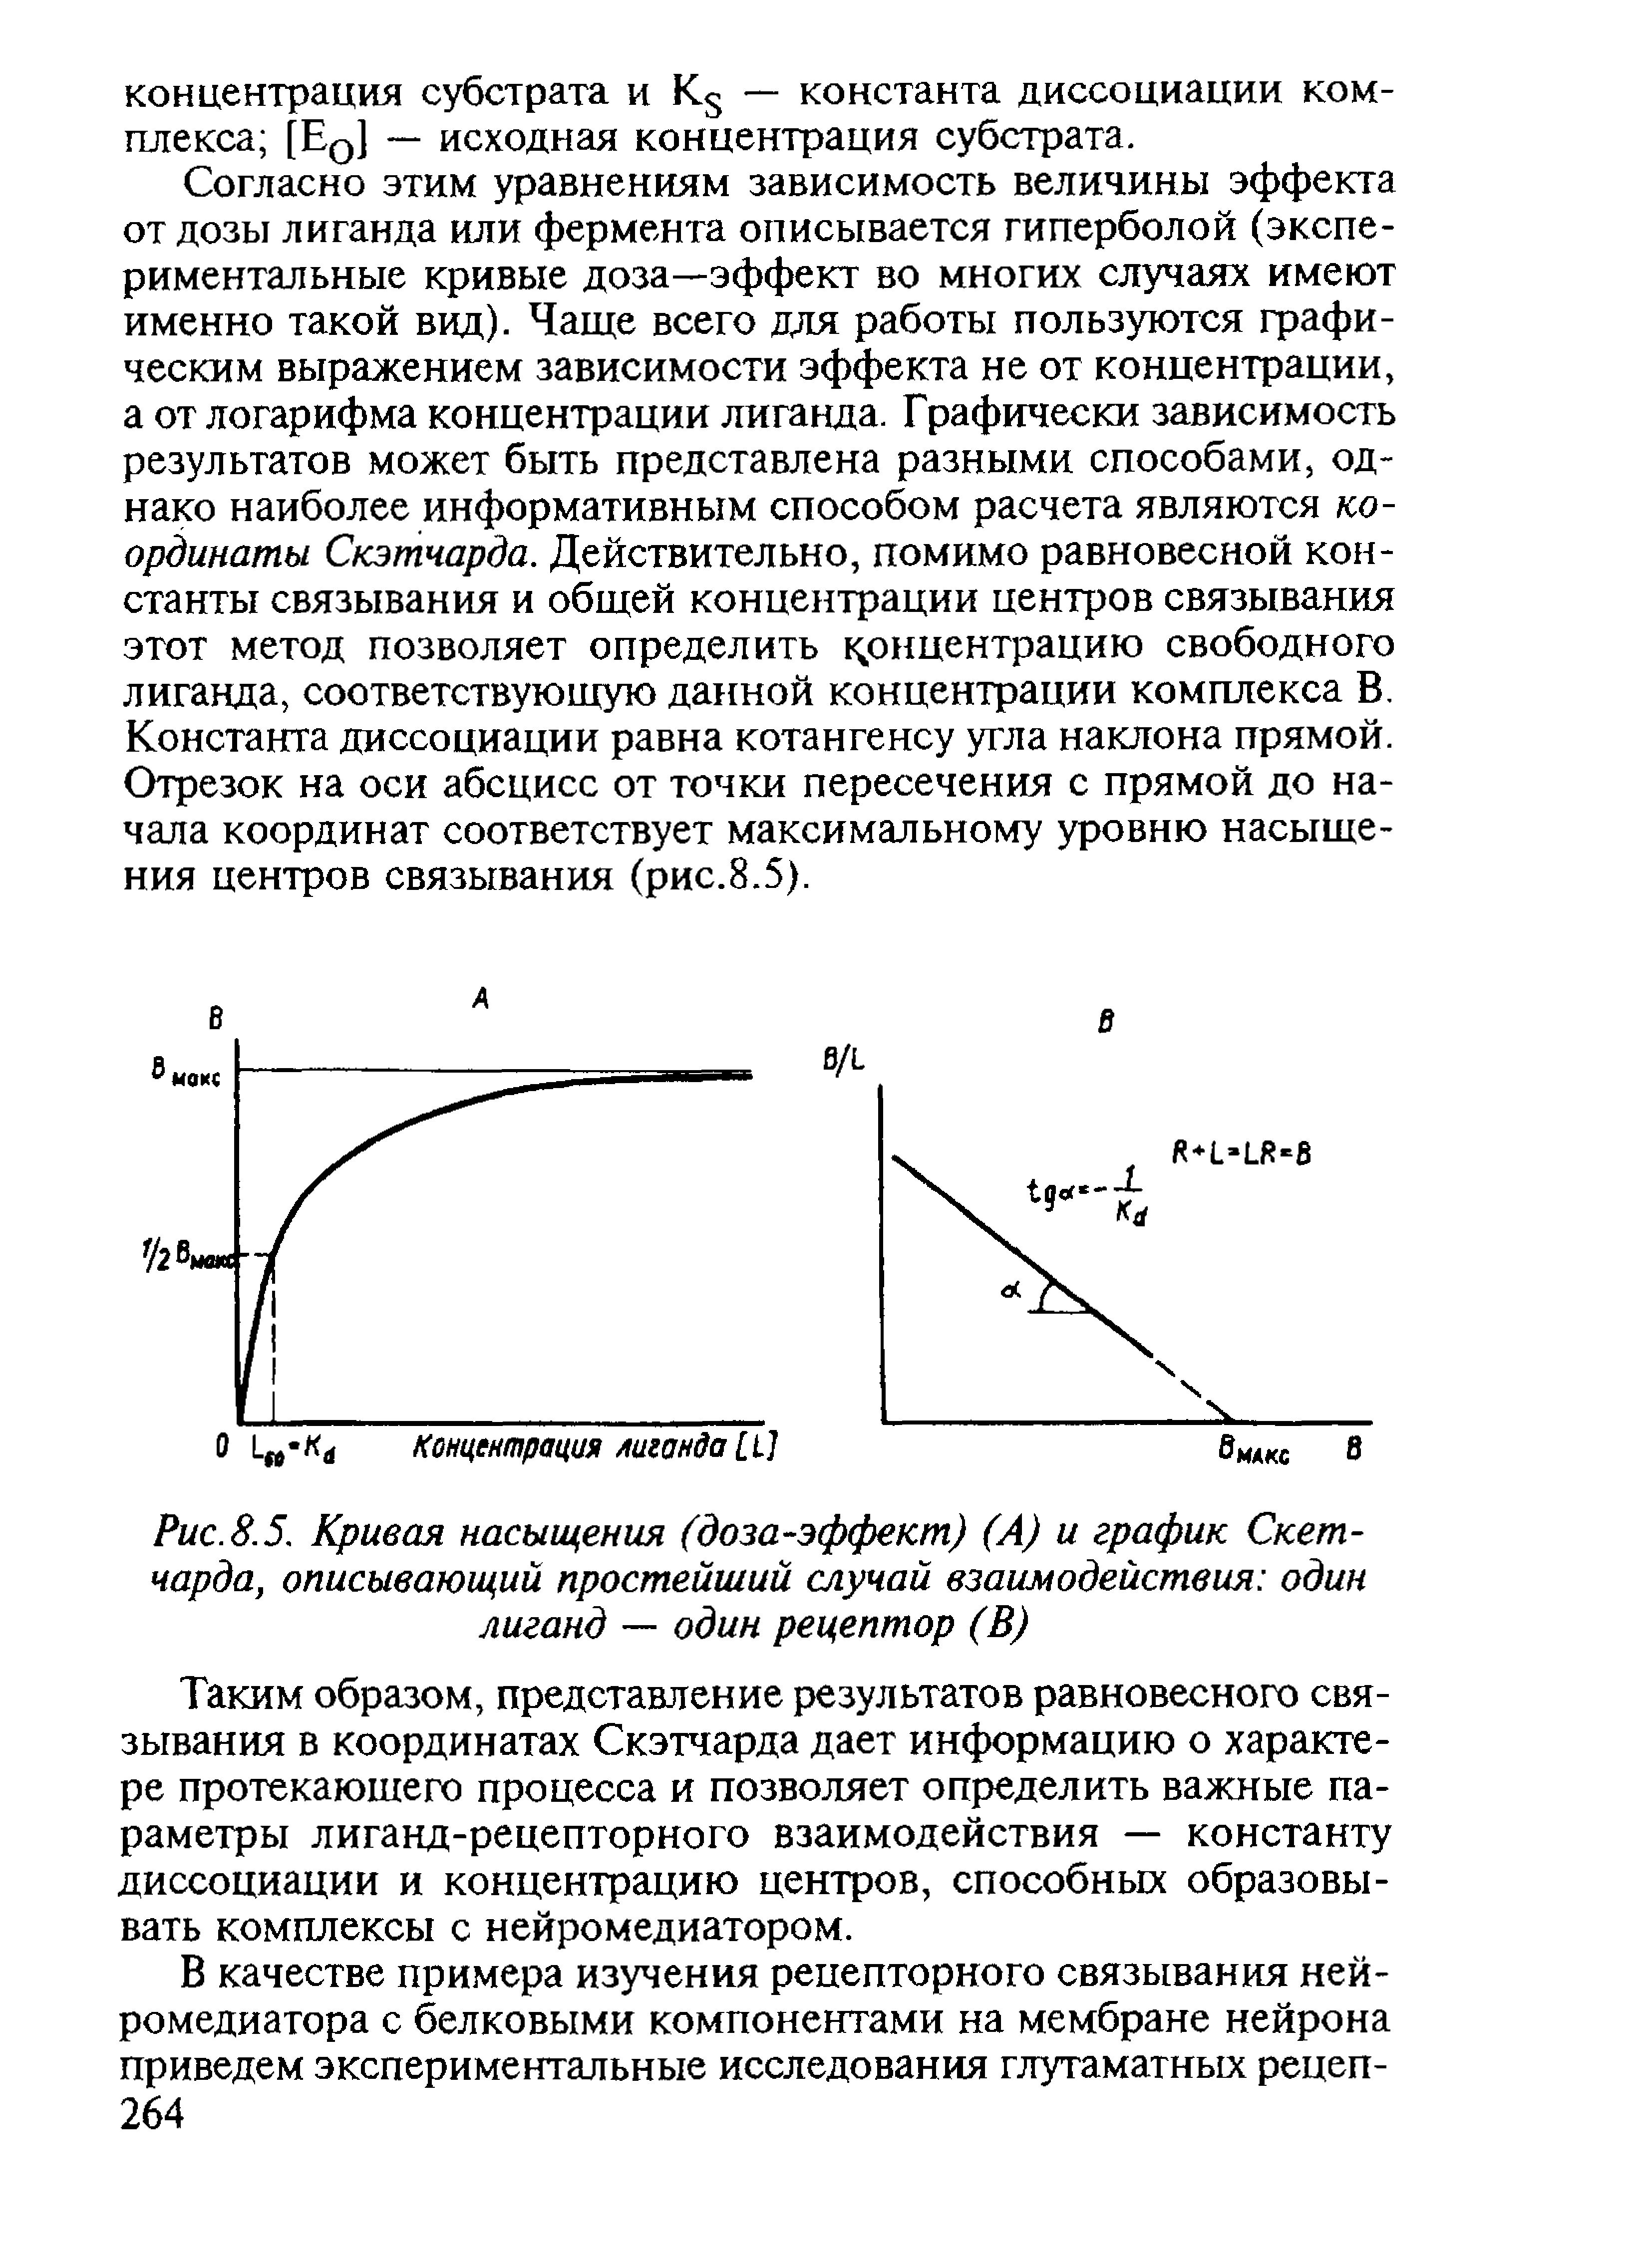 Рис. 8.5. Кривая насыщения (доза-эффект) (А) и график Скет-чарда, описывающий простейший случай взаимодействия один лиганд — один рецептор (В)...